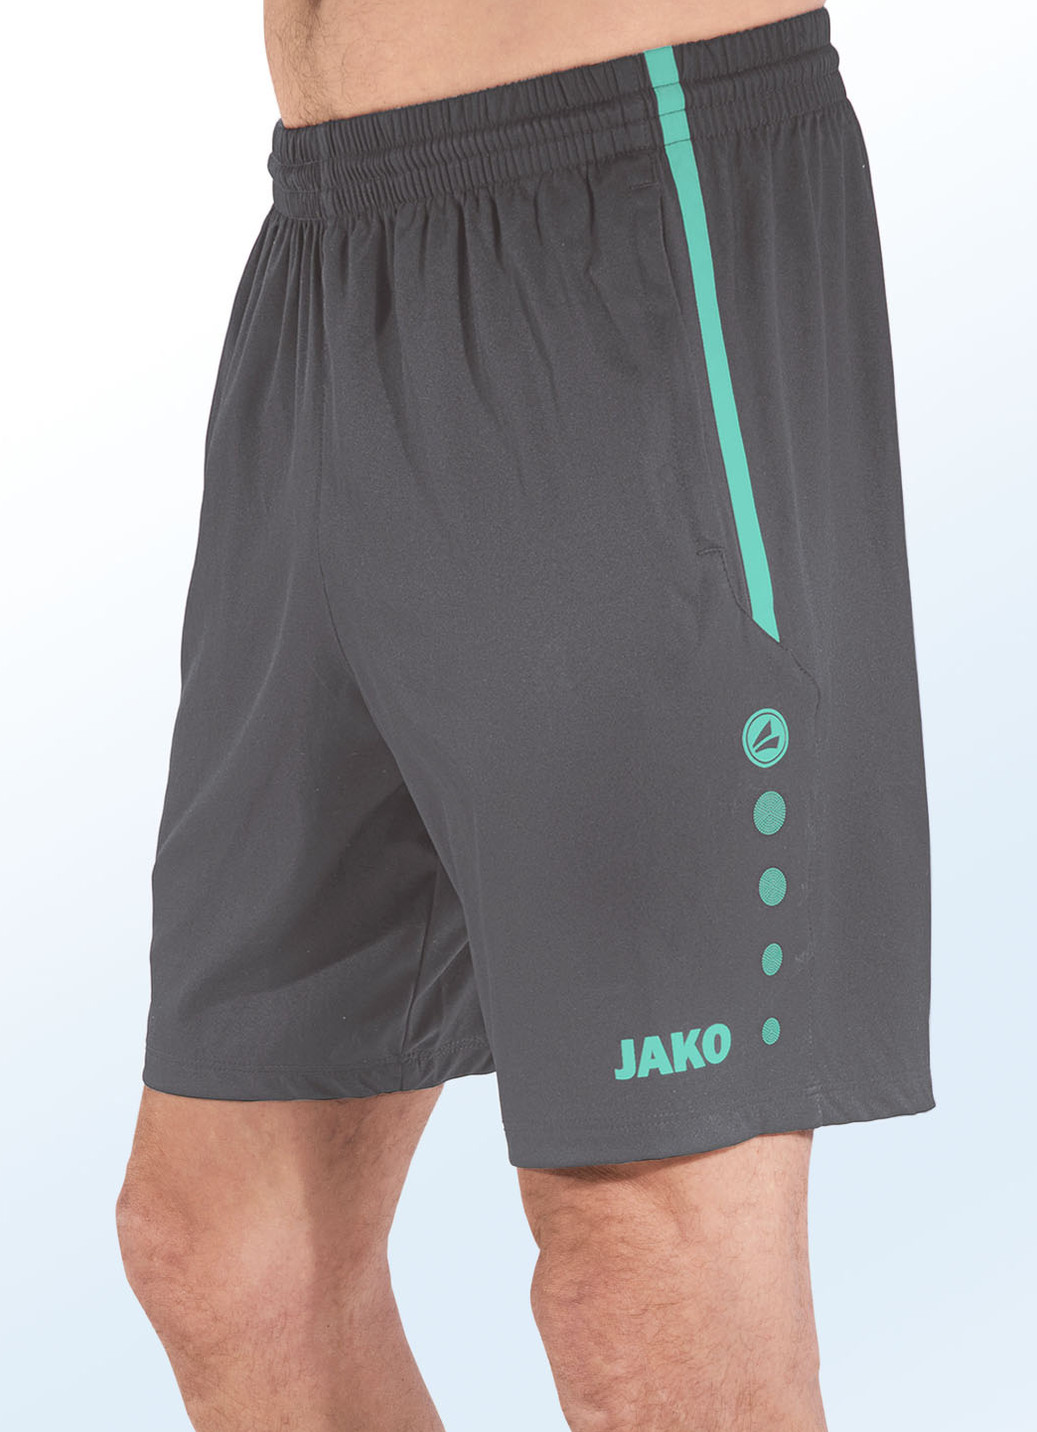 Shorts von "Jako" in 4 Farben, Größe L (50), Grau-Grün von Jako